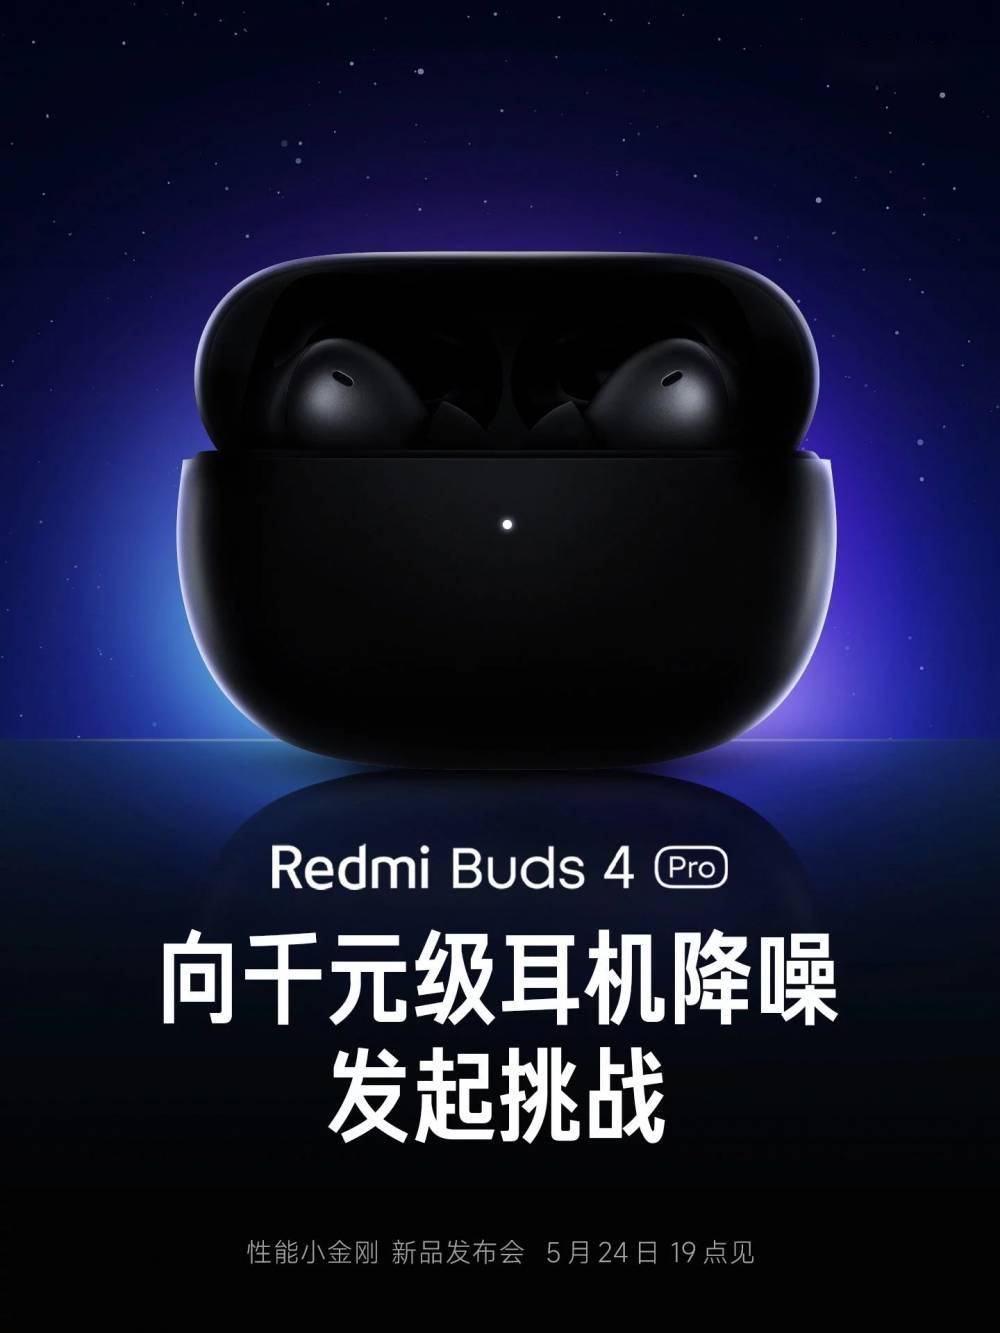 小米Redmi Buds 4 Pro 无线蓝牙降噪耳机 即将上线